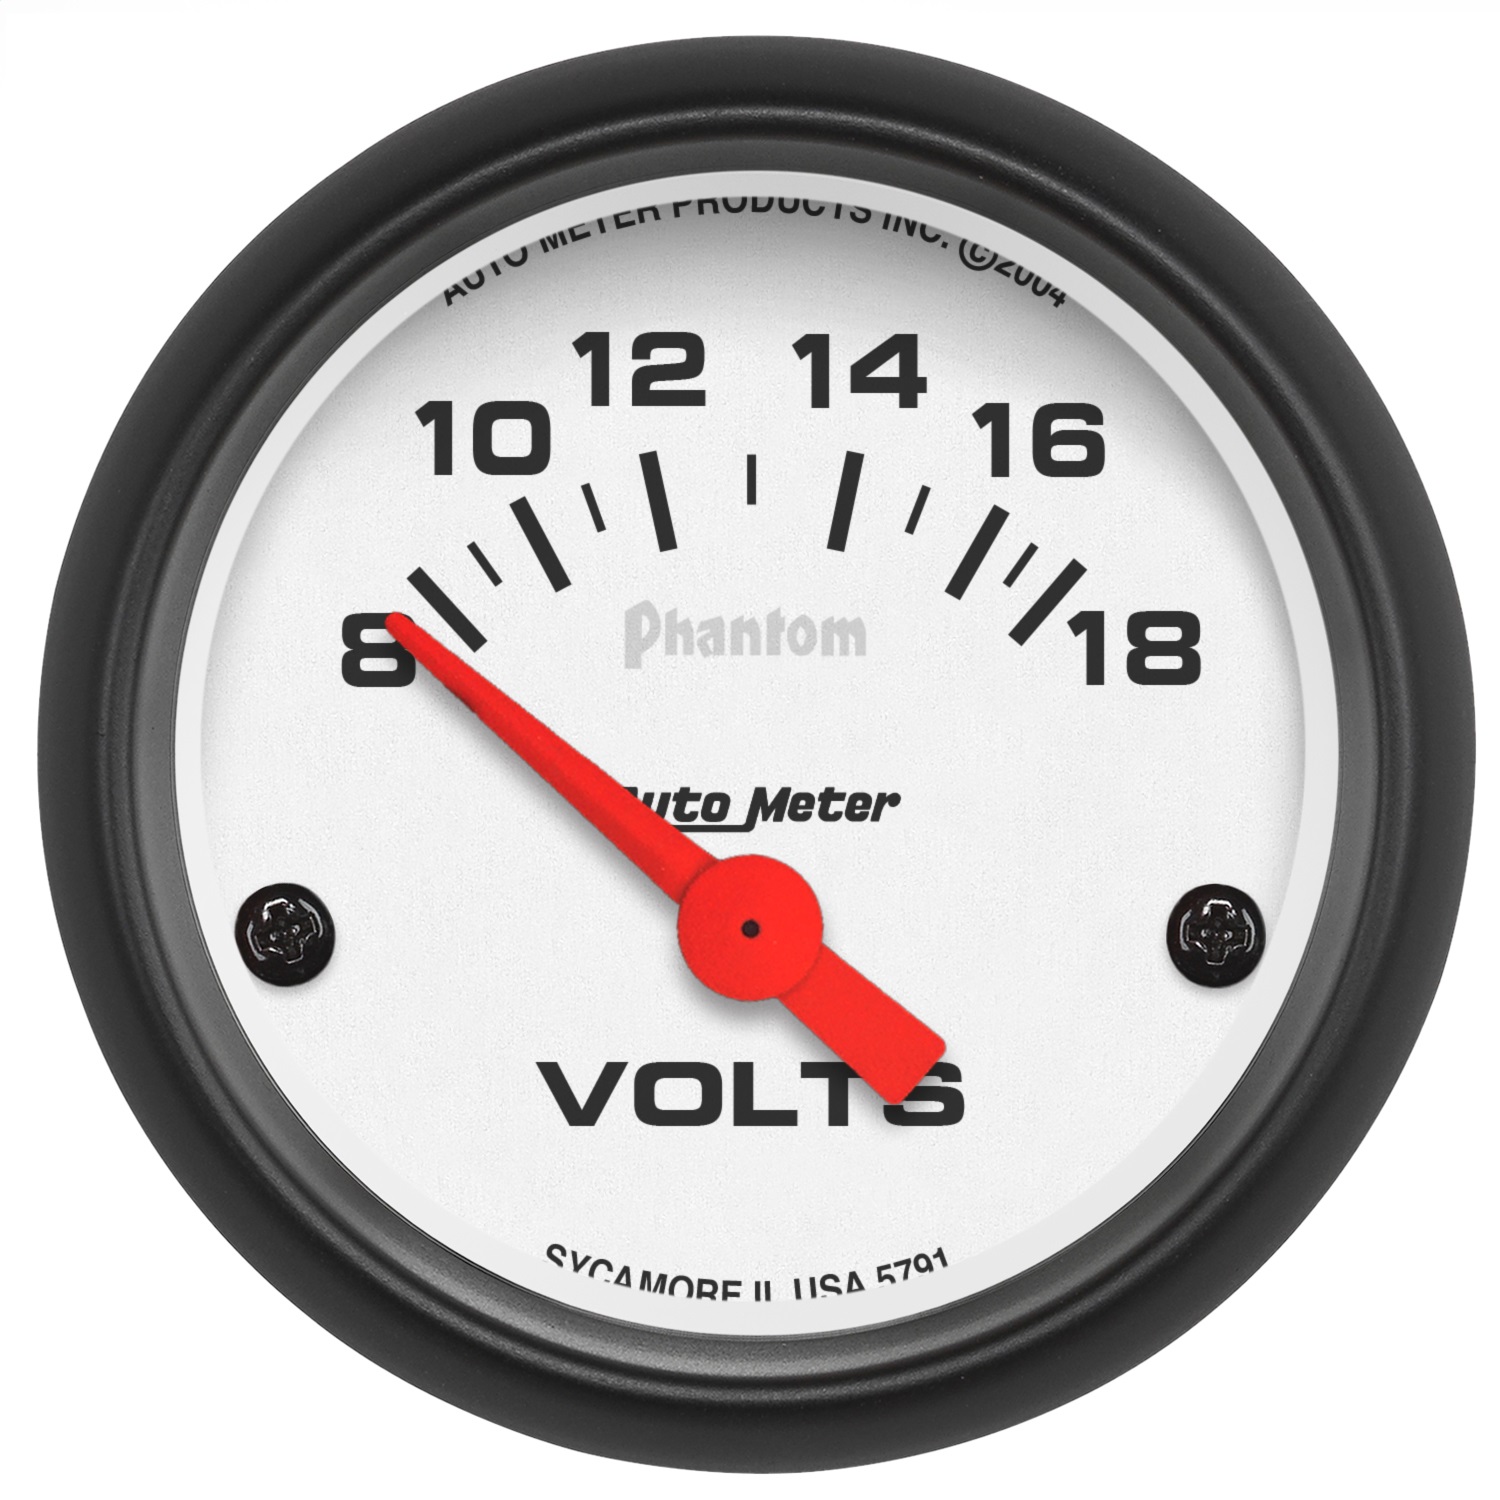 Auto Meter Auto Meter 5791 Phantom; Electric Voltmeter Gauge